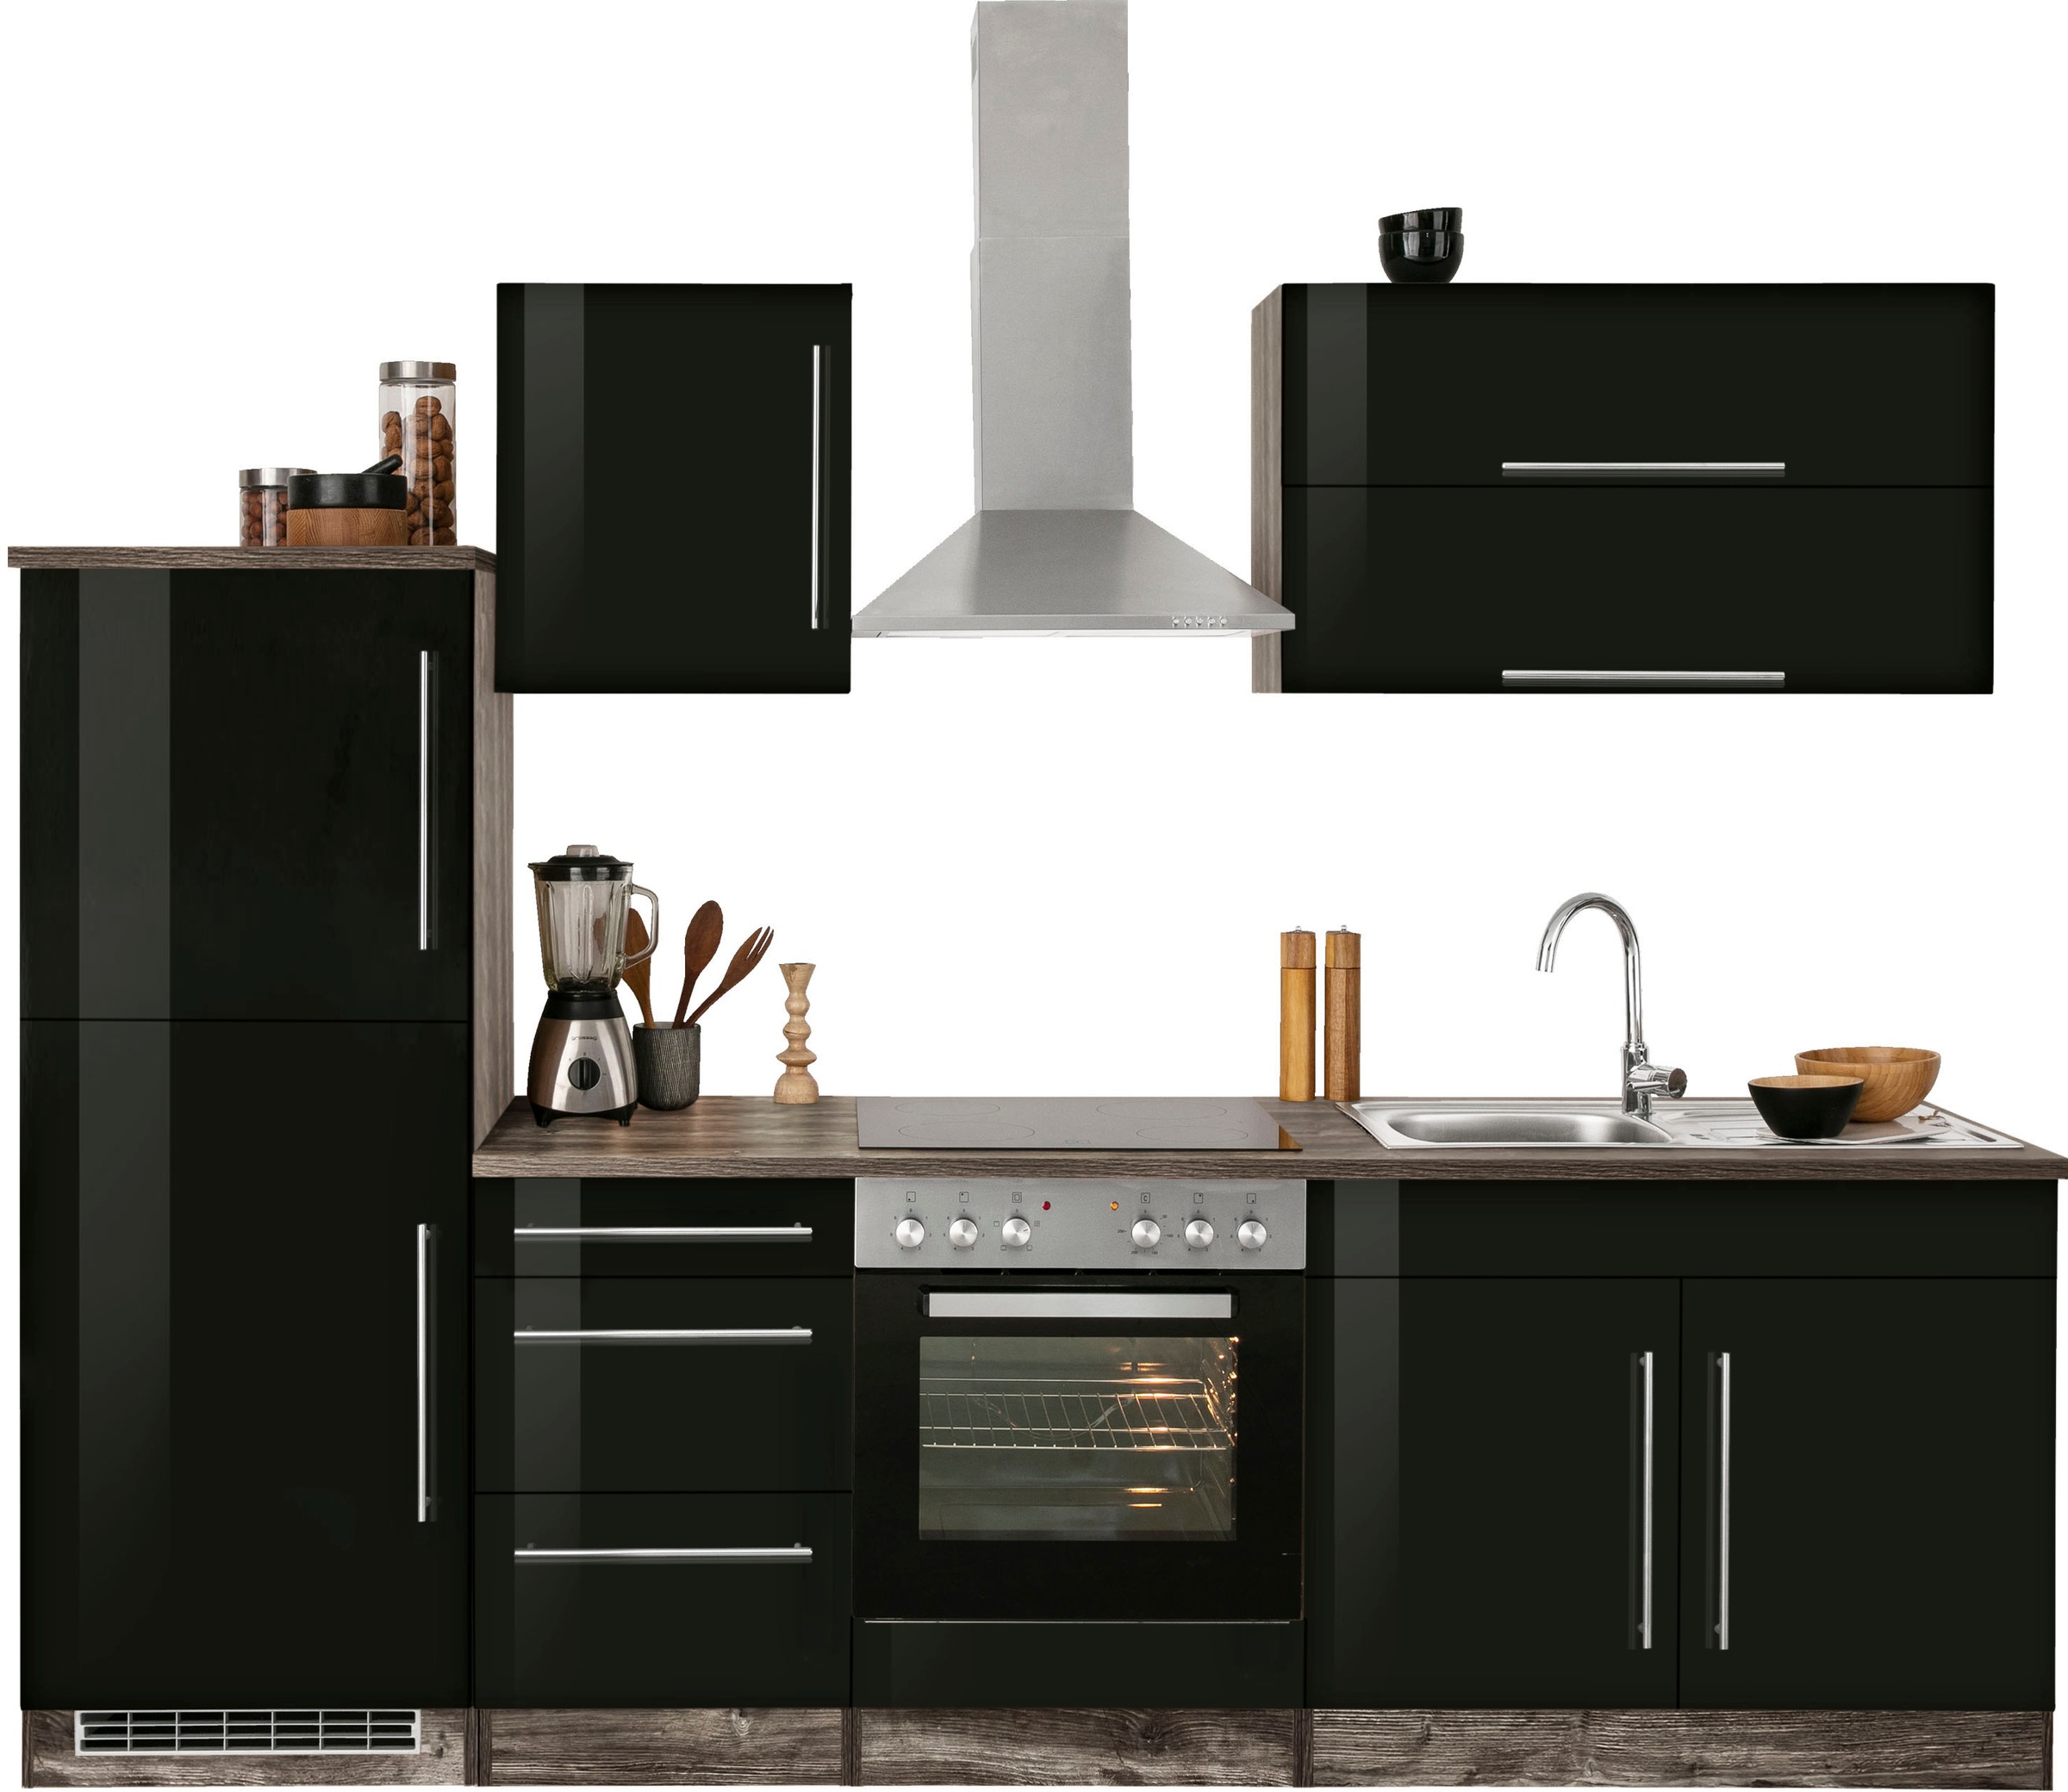 HELD MÖBEL Küchenzeile »Samos«, ohne E-Geräte, Breite 270 cm online kaufen